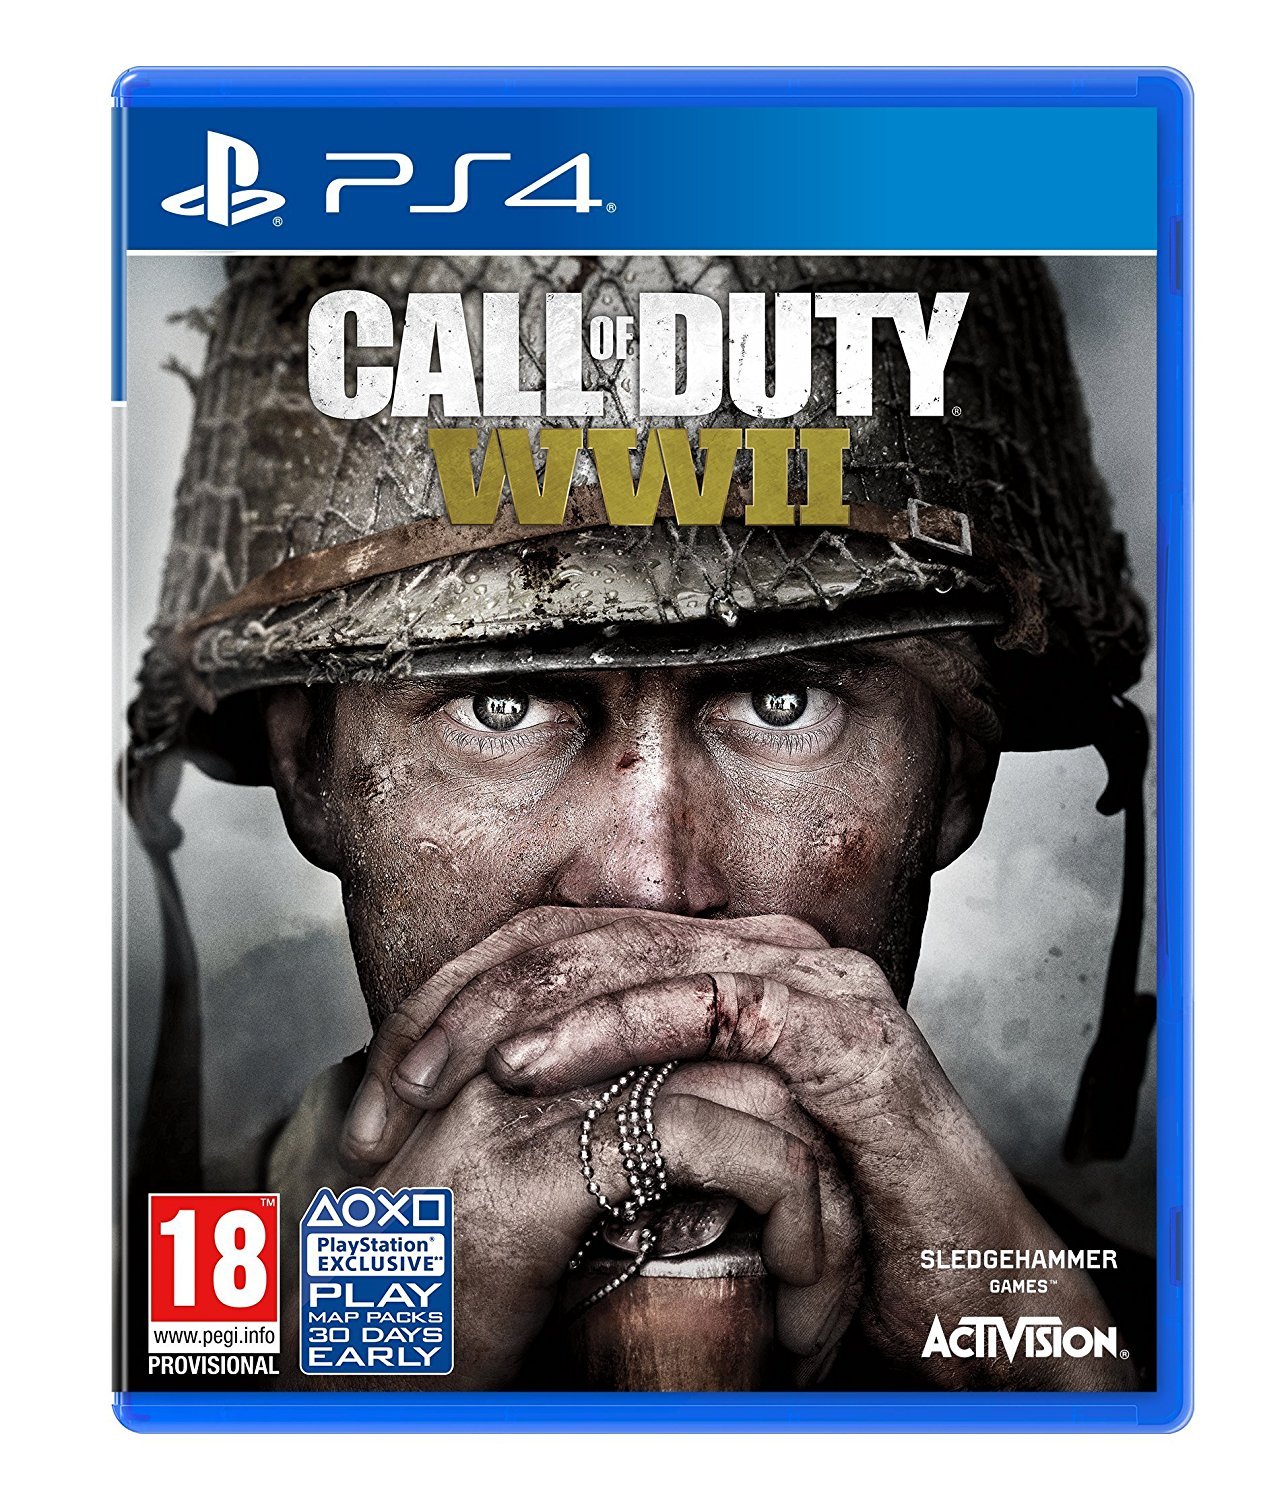 Превью Call of Duty WWII от Gamereactor - Возвращение к истокам.